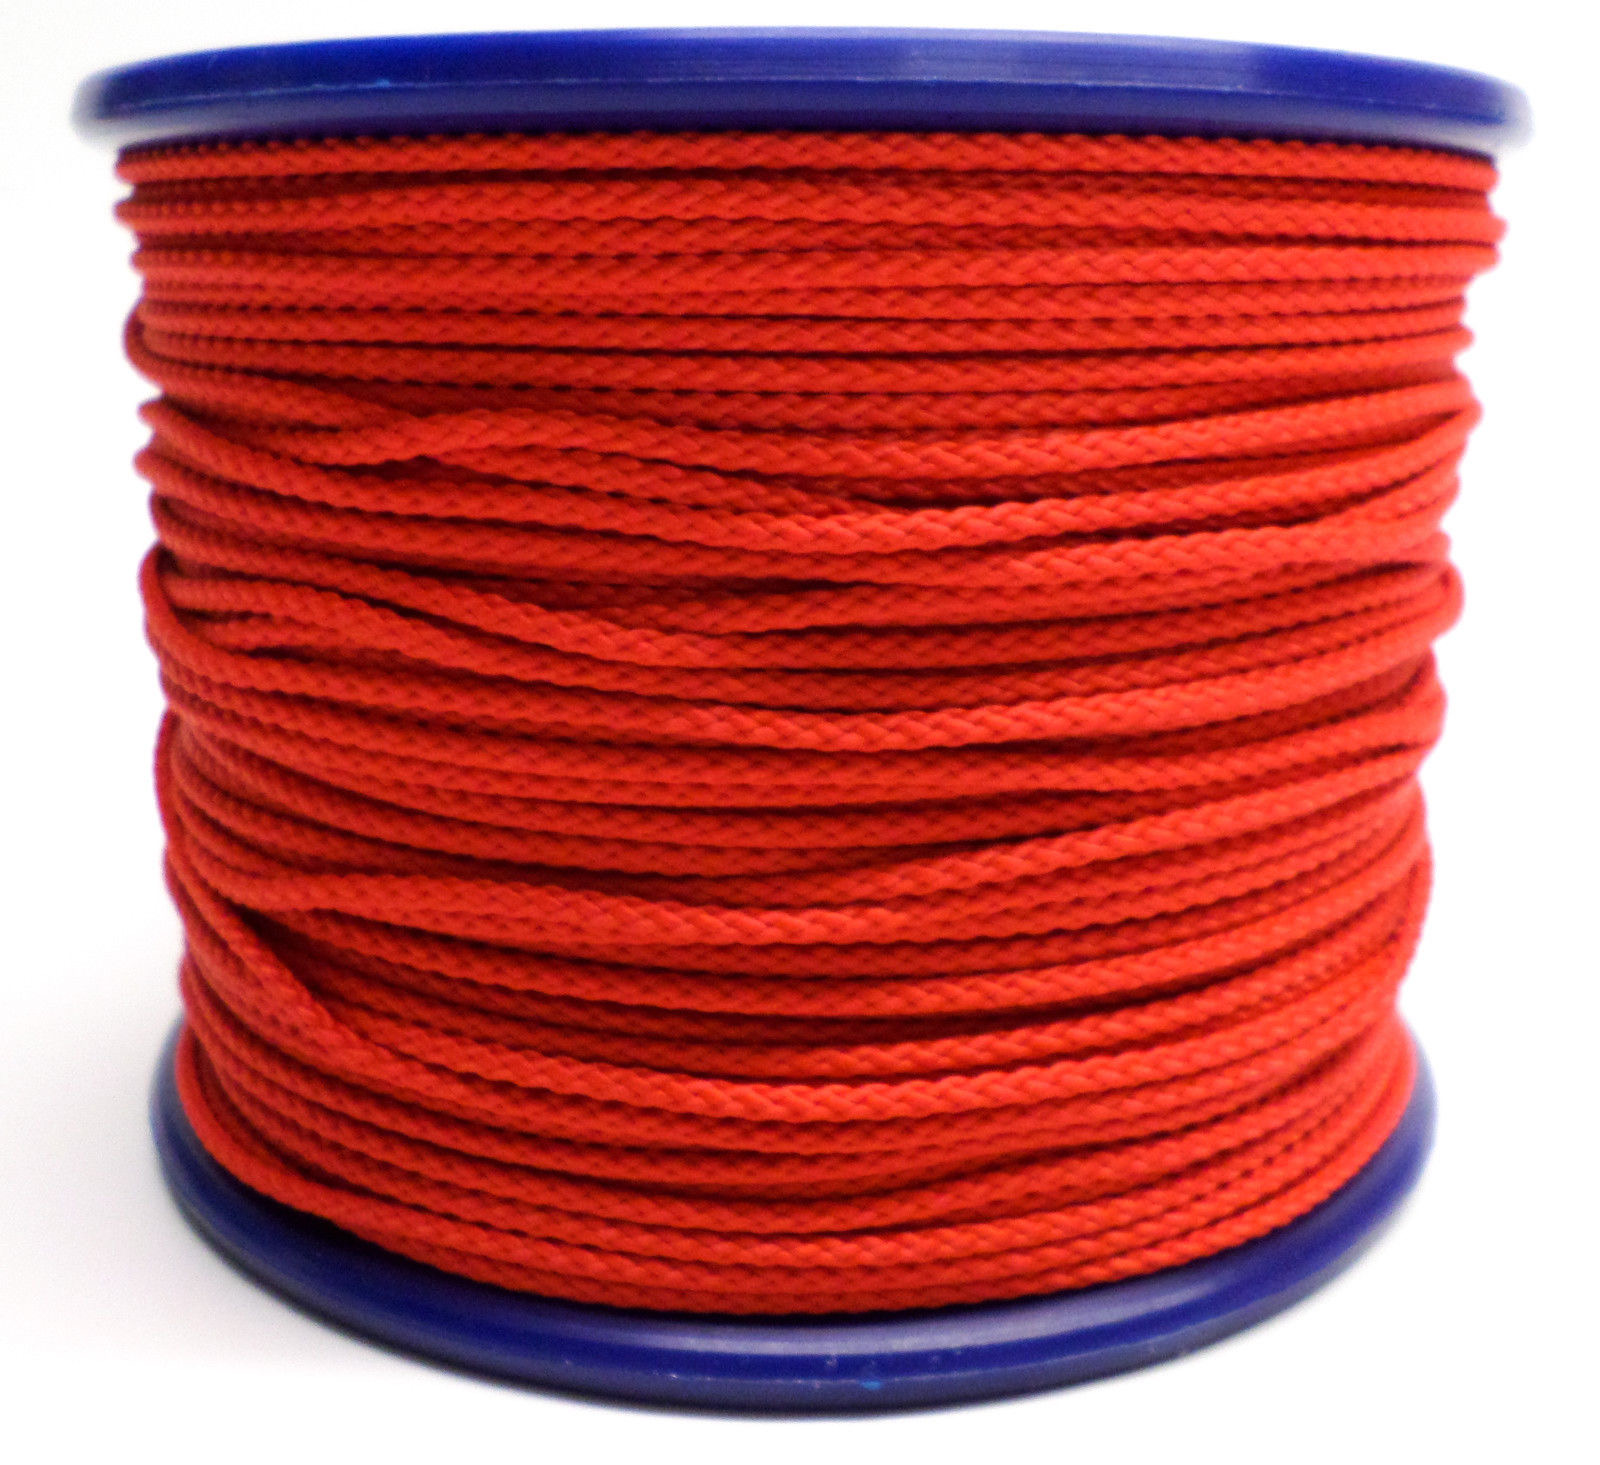 Rood touw kopen? Ook u IJzerwarenwebshop.nl!